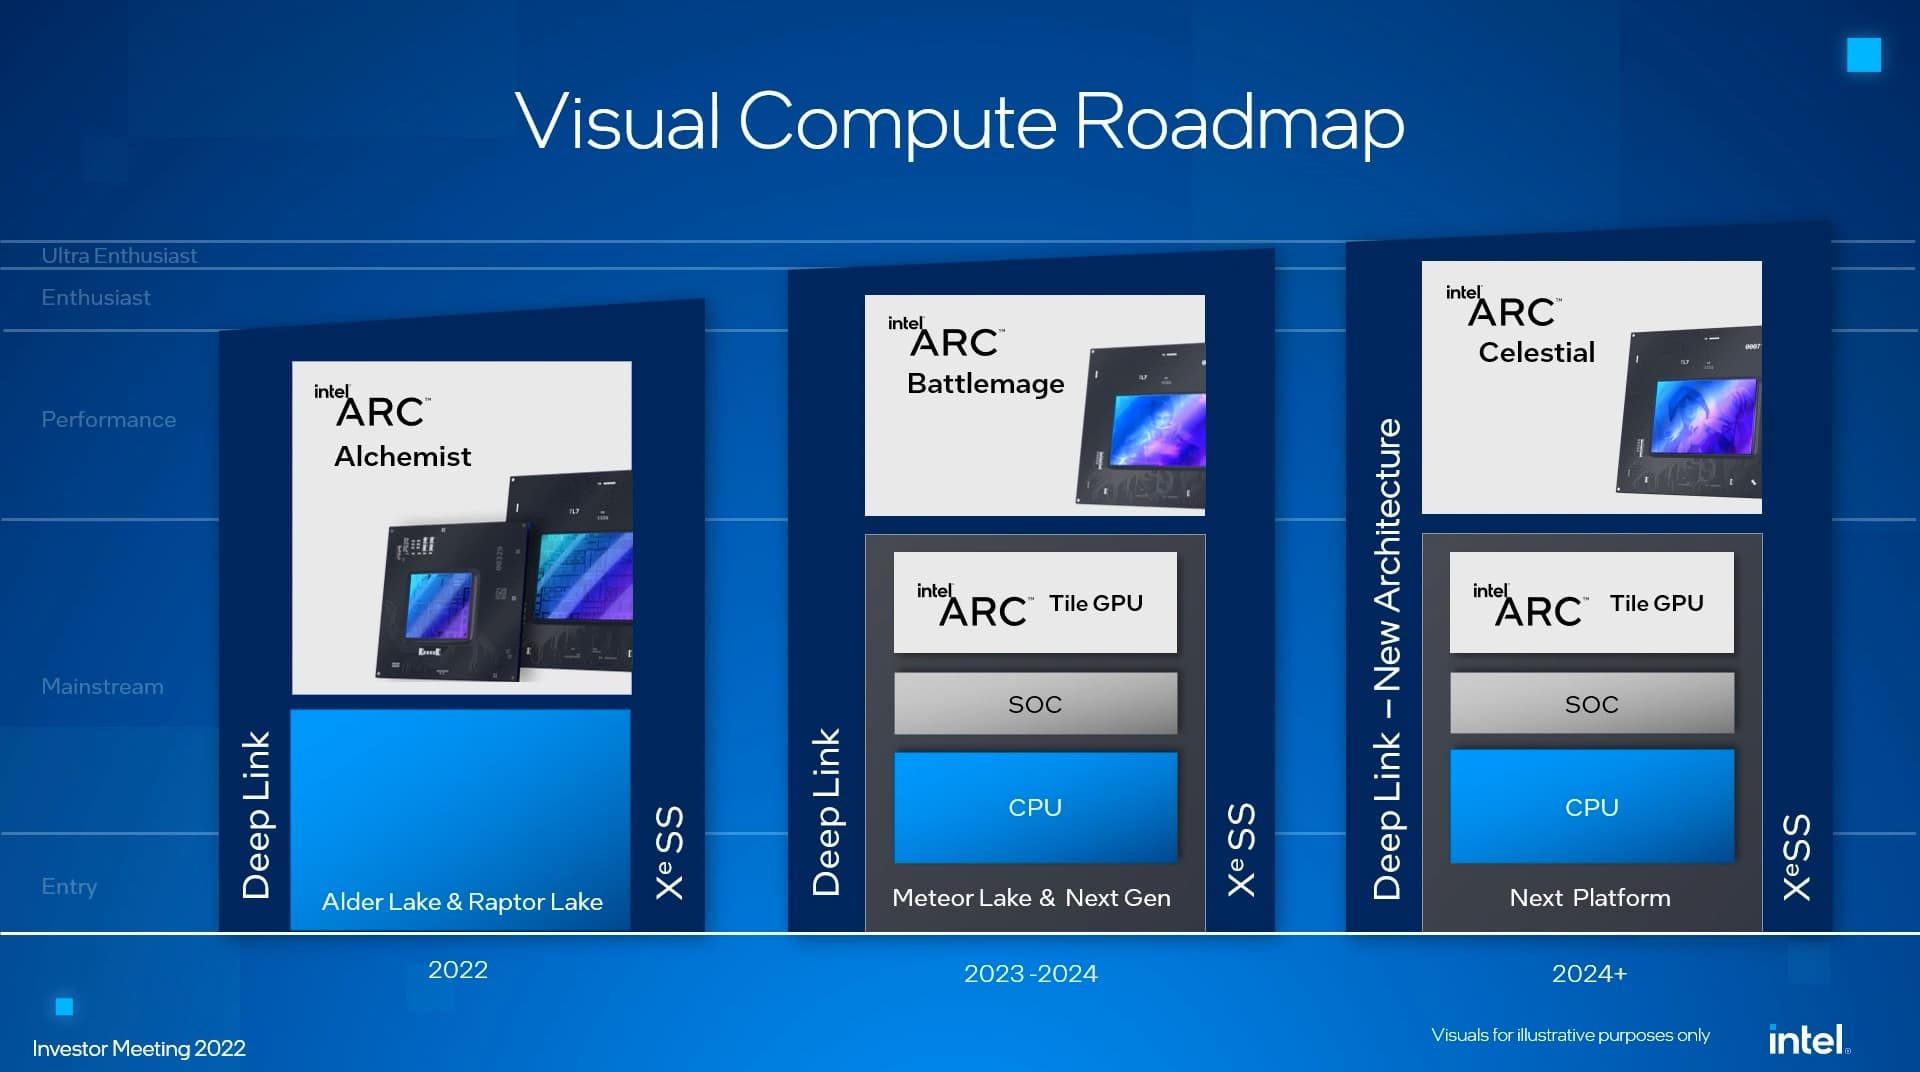 Intel Arcシリーズ ロードマップ